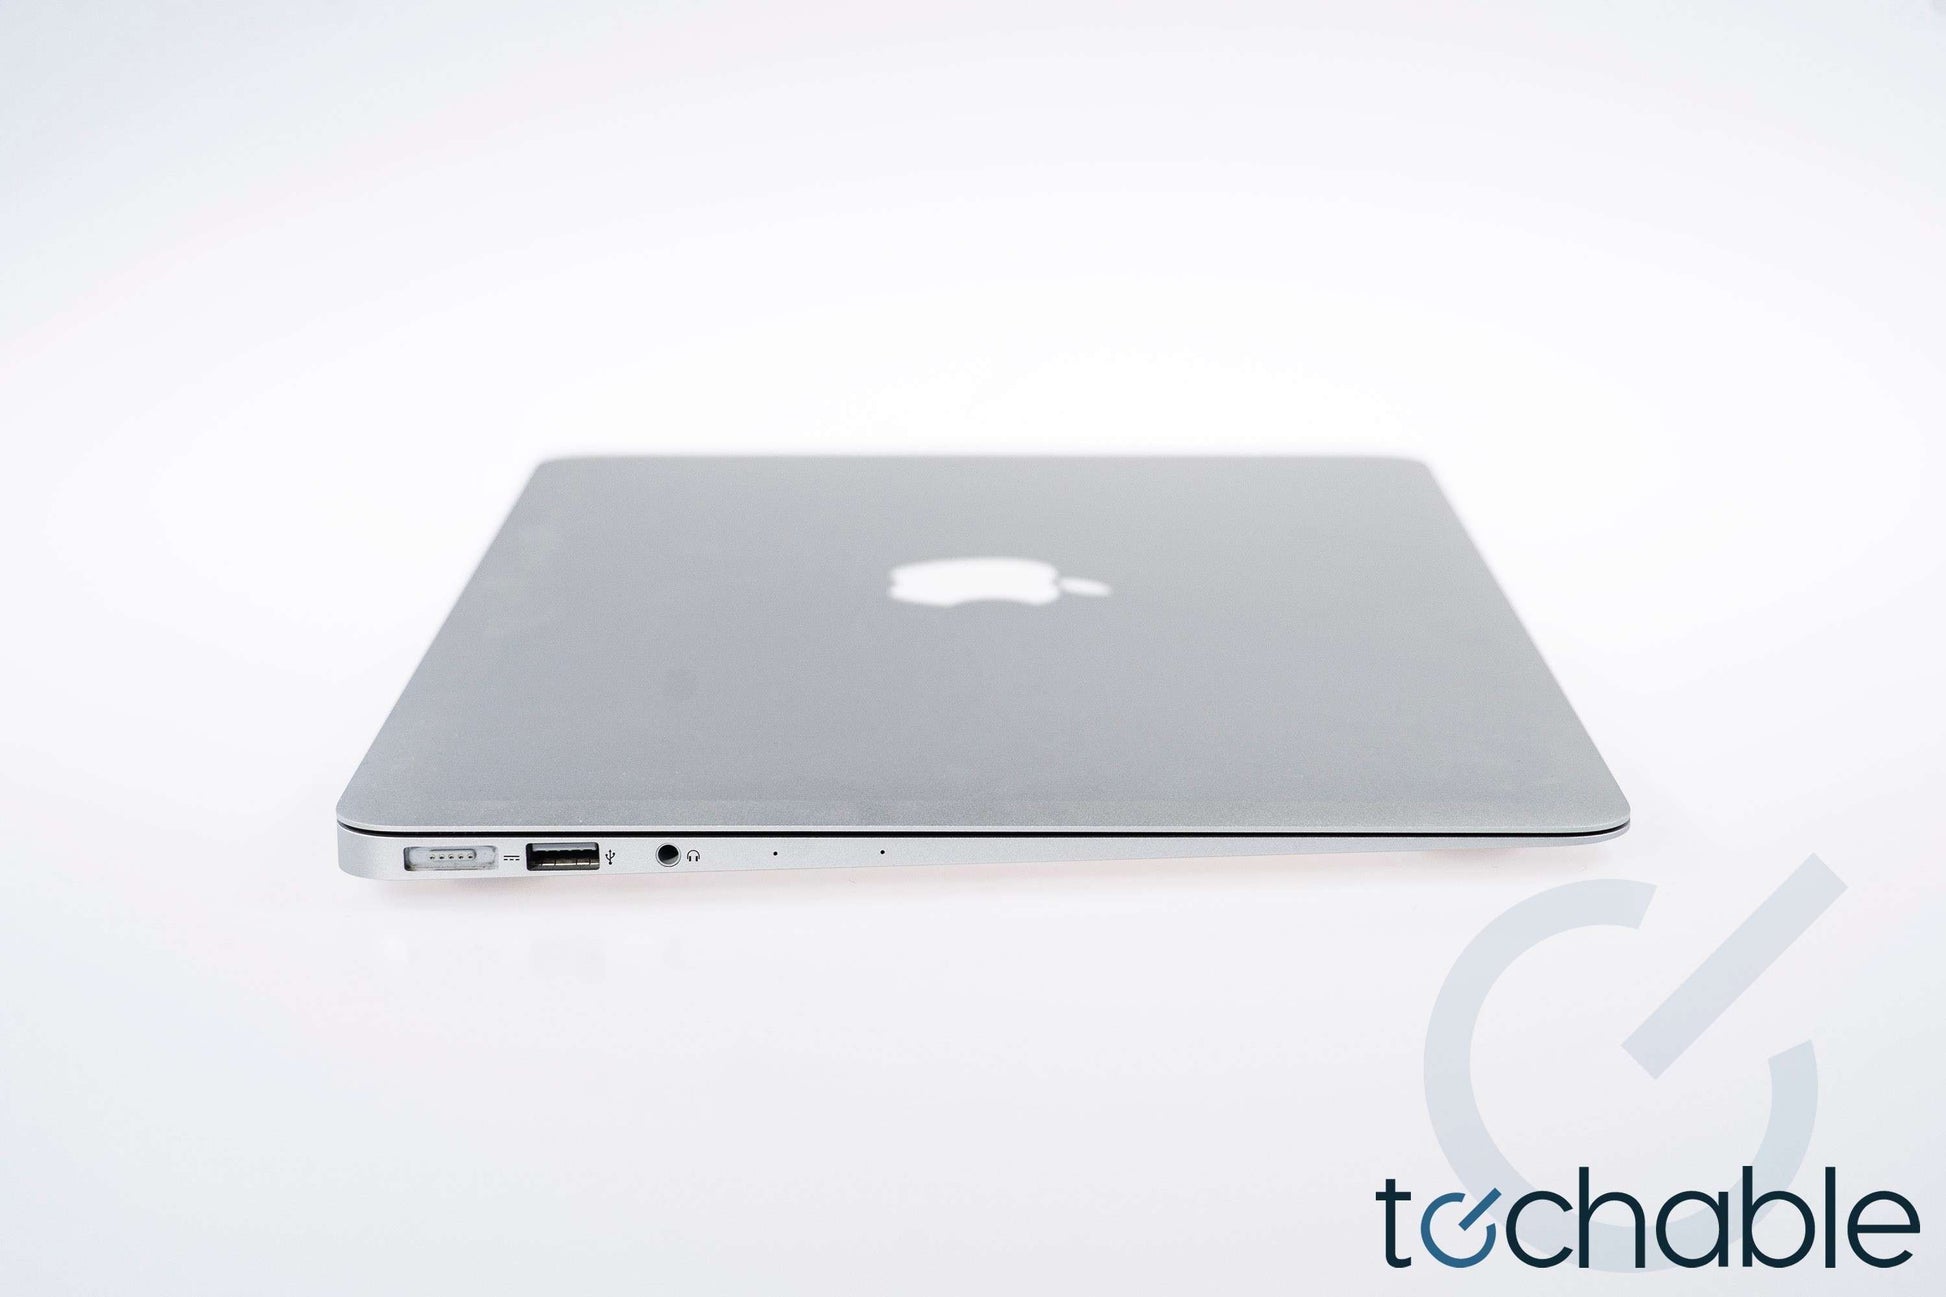 Apple MacBook Air 11-Inch (2015) Core i5 1.6GHz 4GB  A1465 - MJVM2LL/A